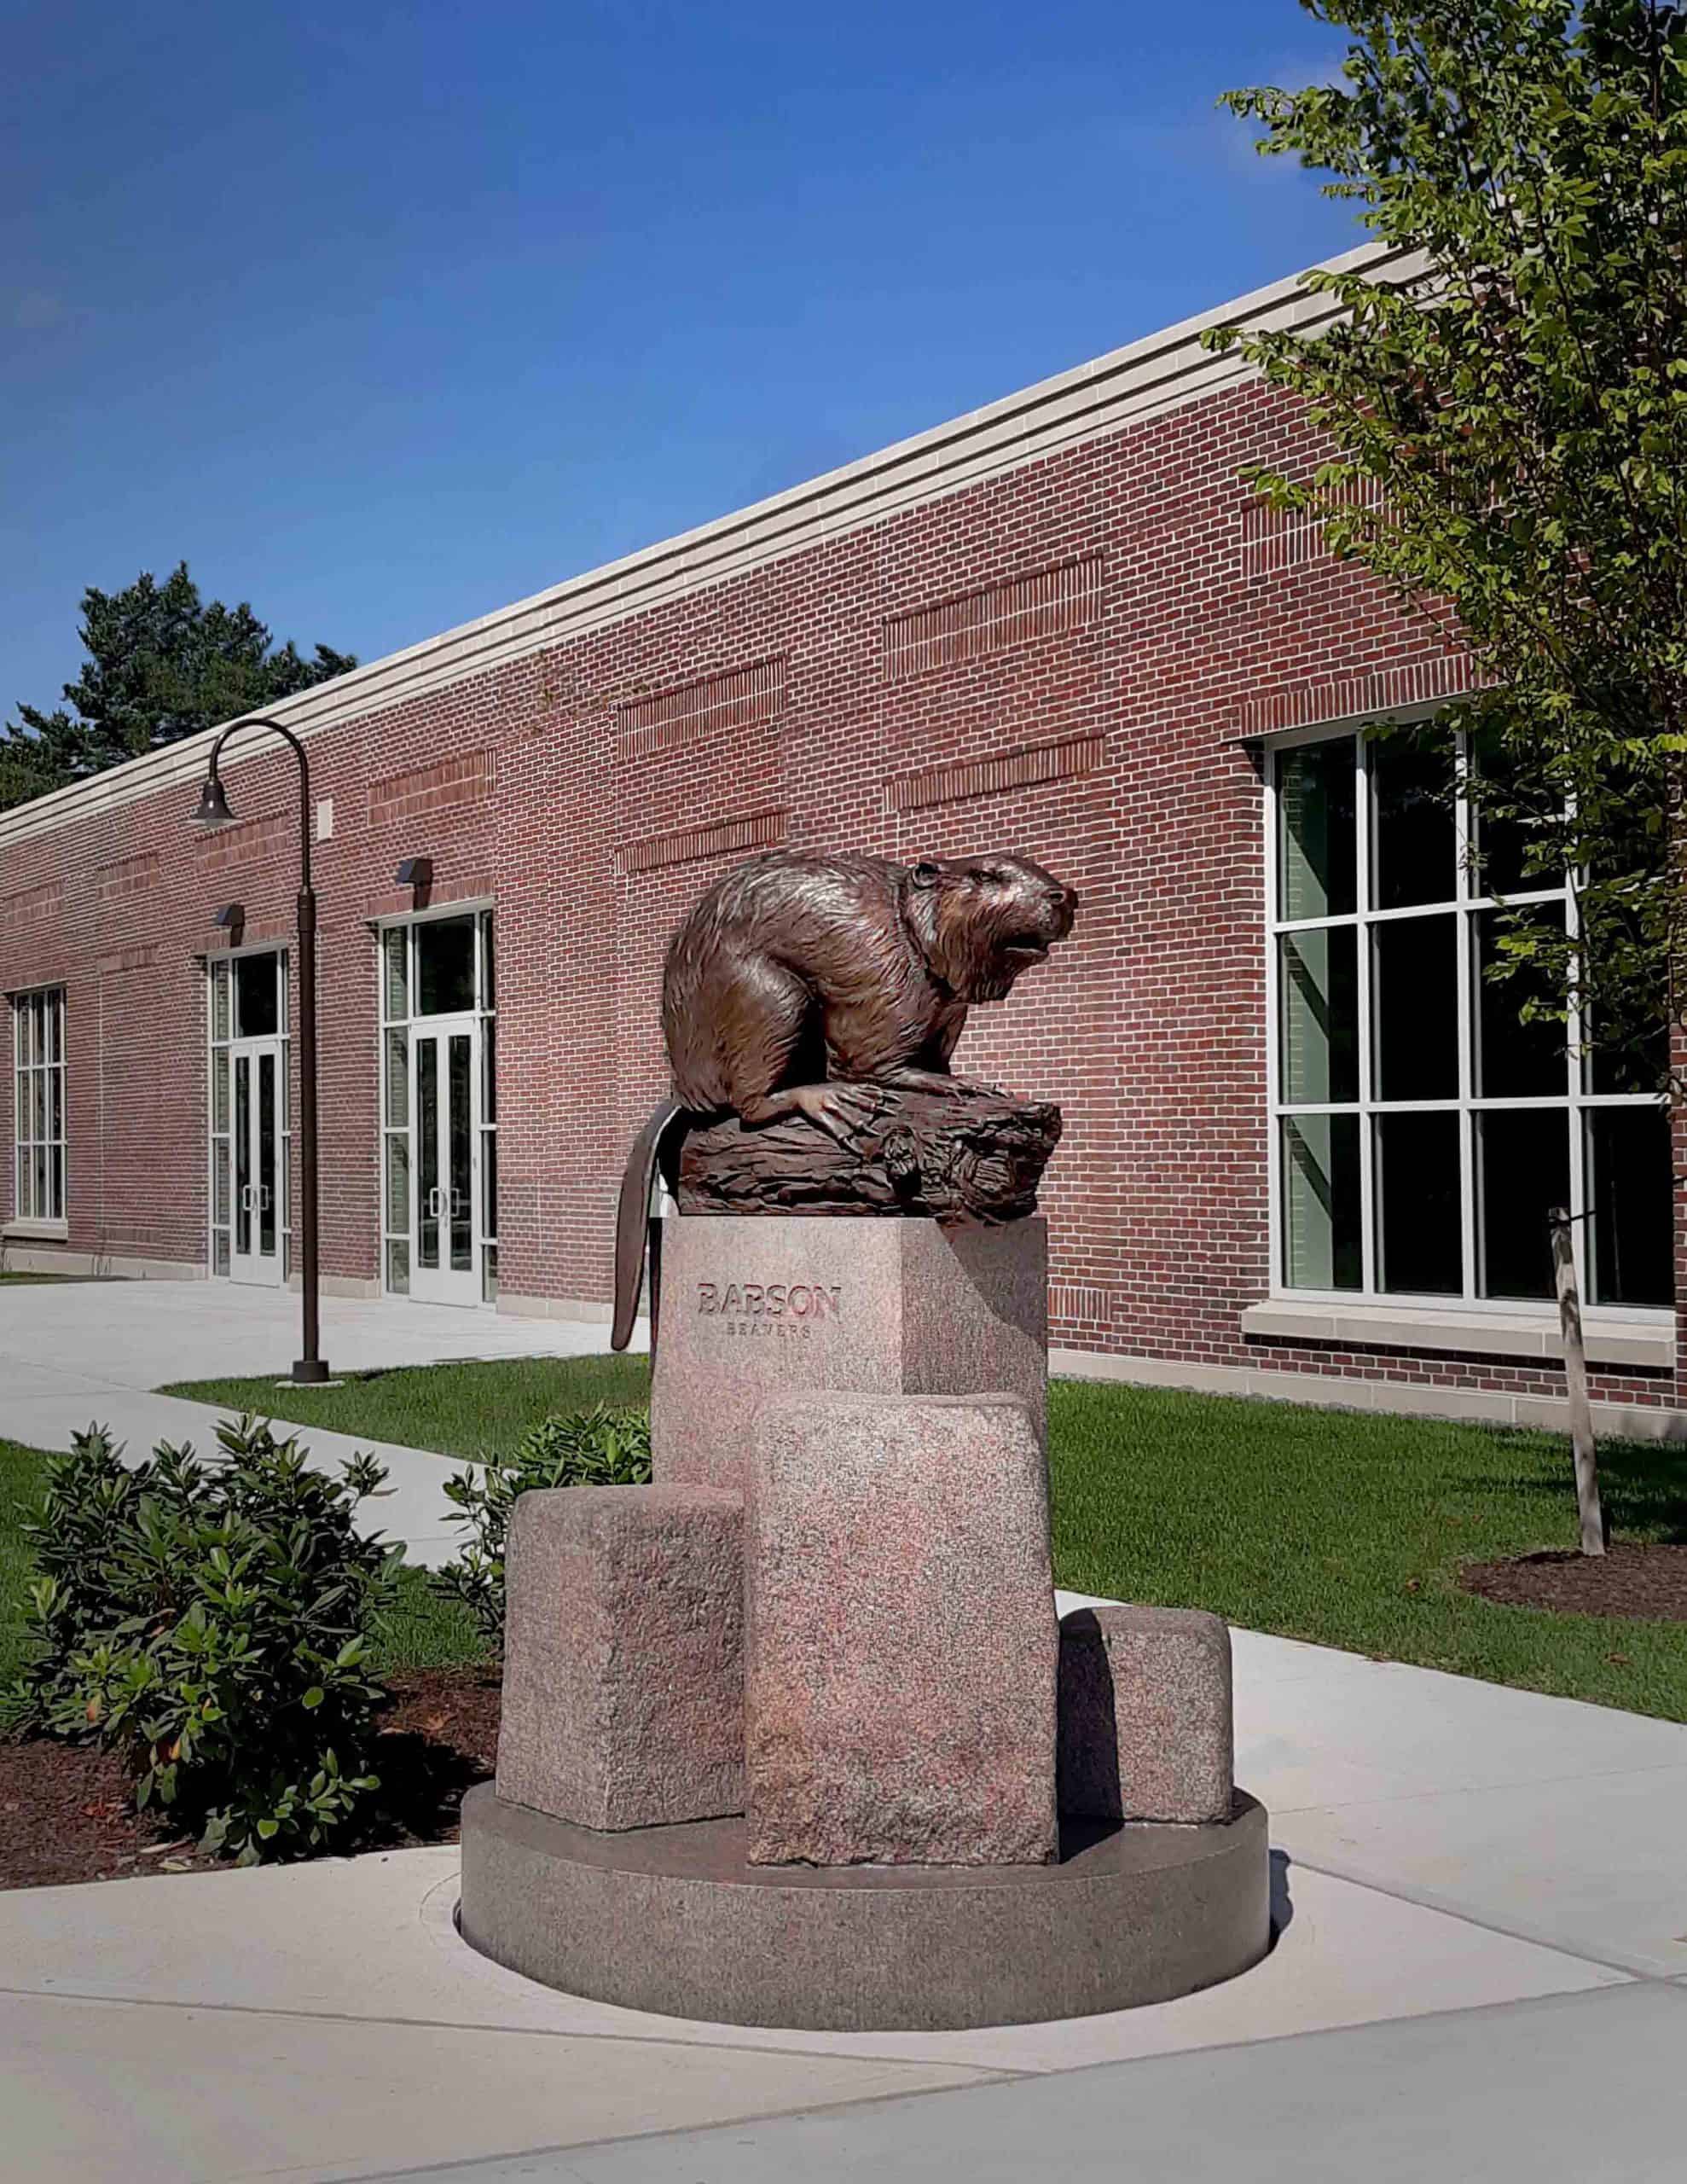 Babson College Beaver Sculpture